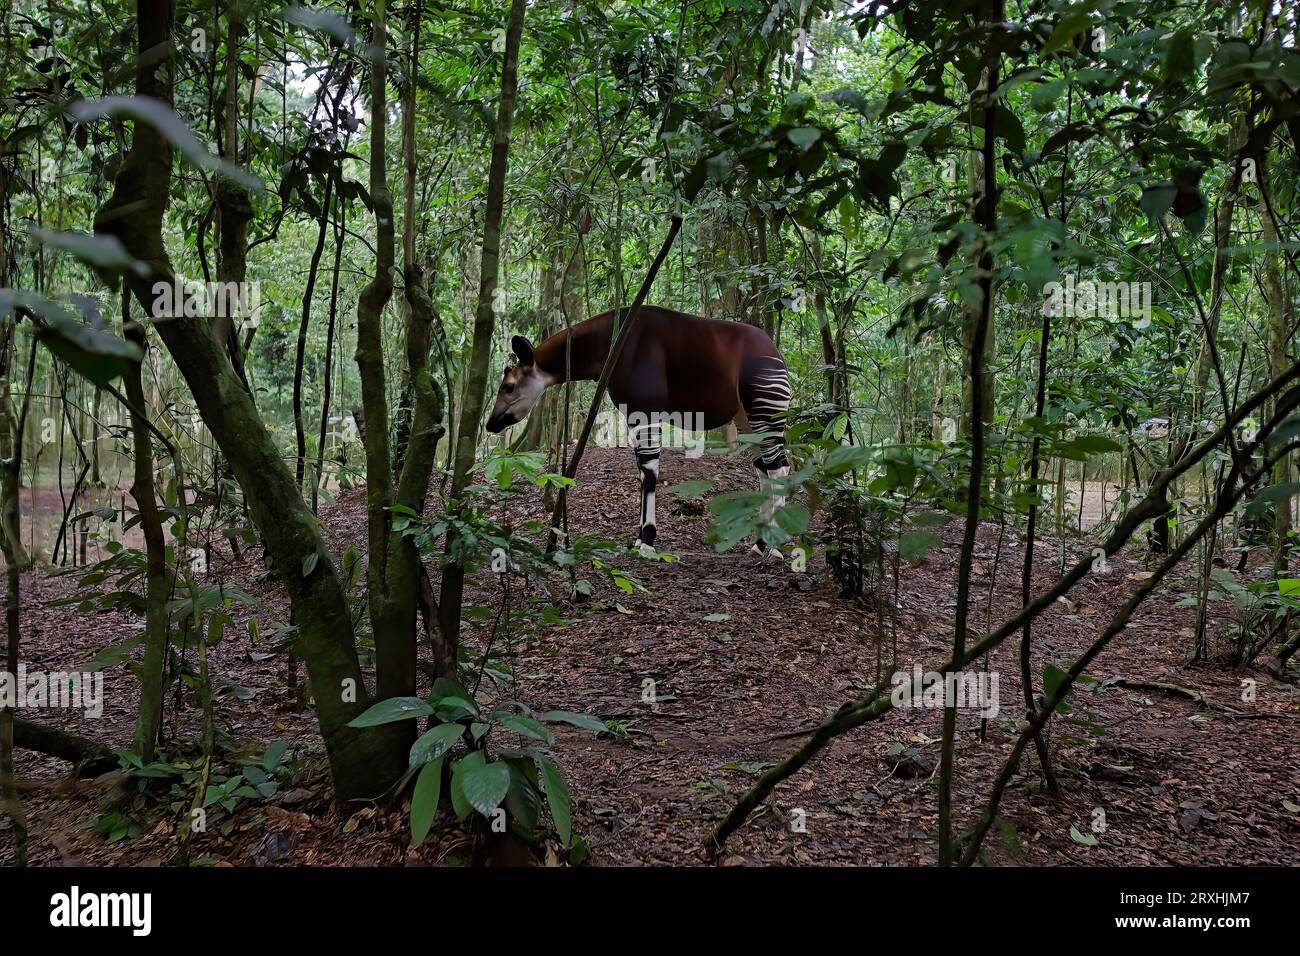 Un okapi se nourrit dans une réserve faunique. L'okapi est un mammifère avec des marques rayées distinctes qui mesure moins de cinq pieds de haut. L'herbivore se nourrit Banque D'Images